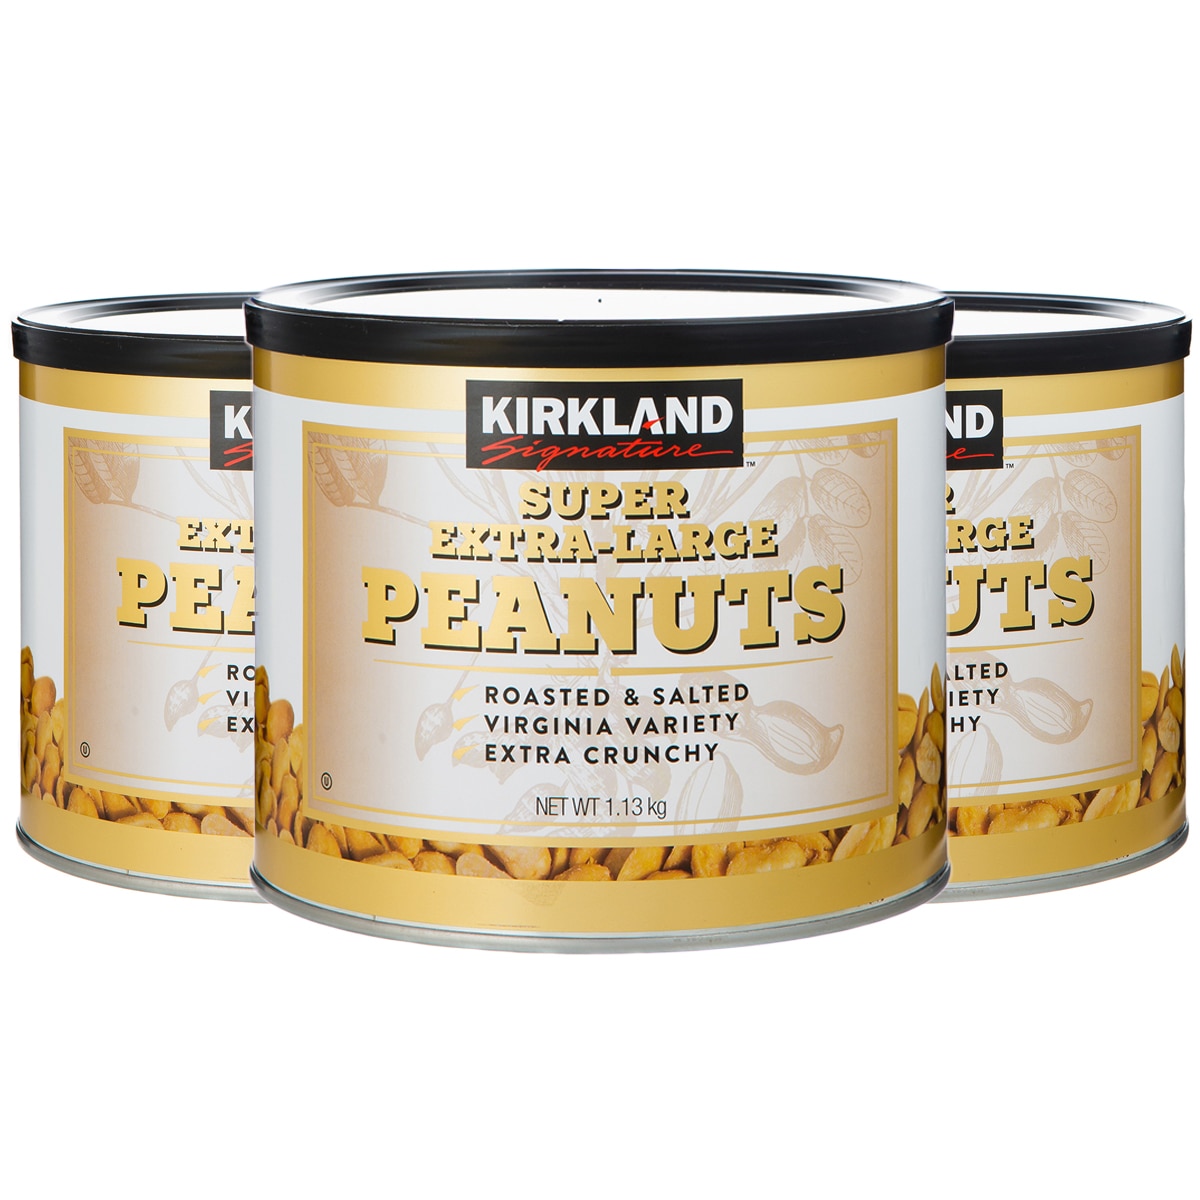 Kirkland Signature Super XL Peanuts